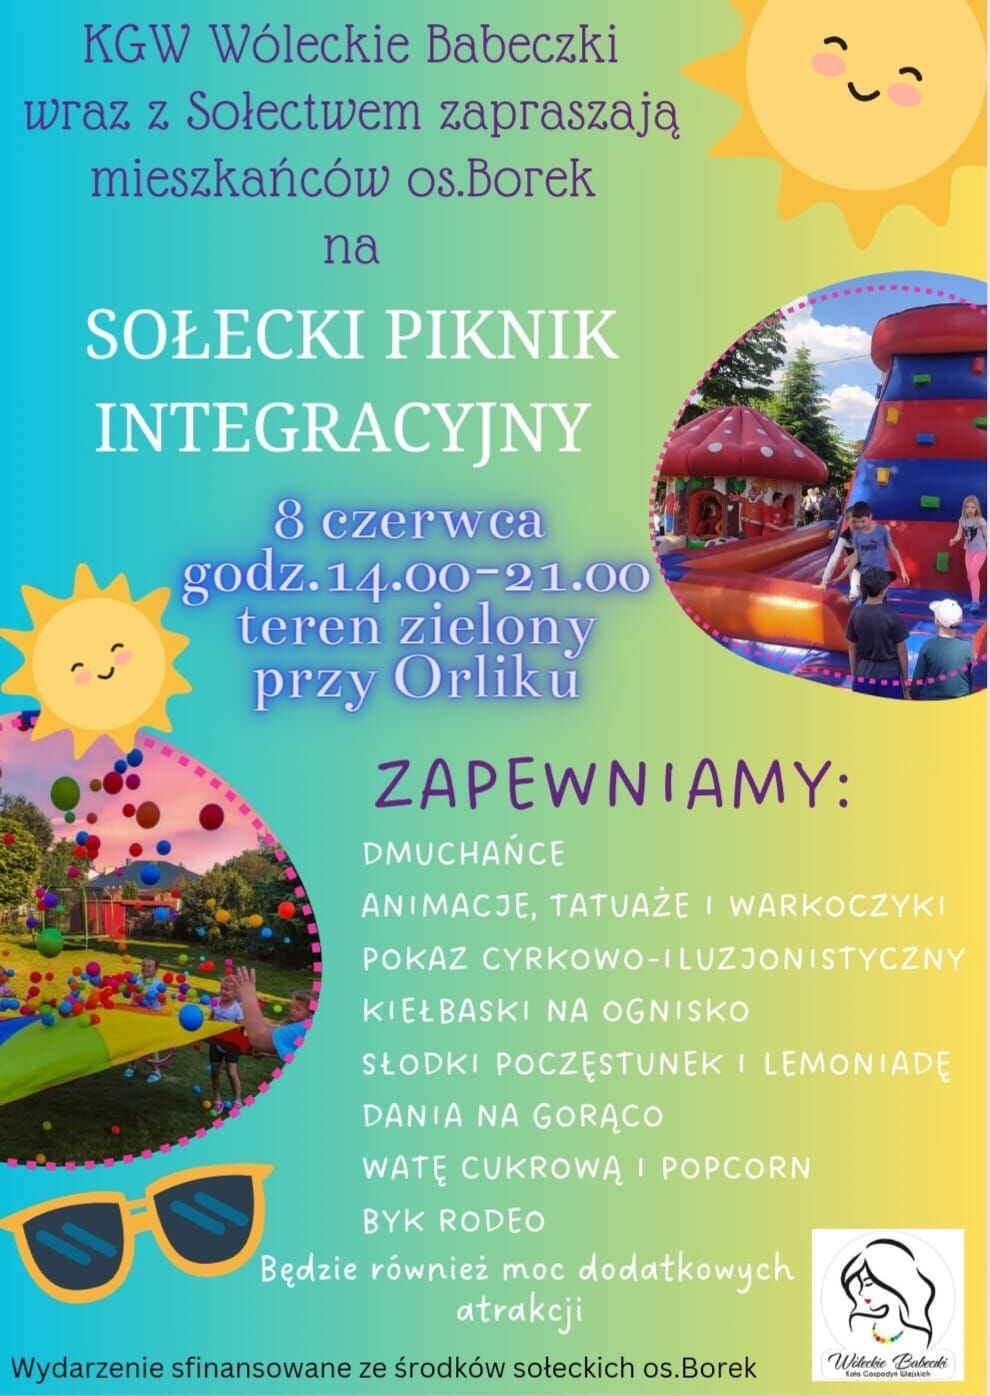 Plakat zapraszający na "Sołecki Piknik Interakcyjny", pokazujący grafiki słońca, dmuchanego zamku i popcornu, z informacjami o atrakcjach, takich jak animacje, tańce i poczęstunek.